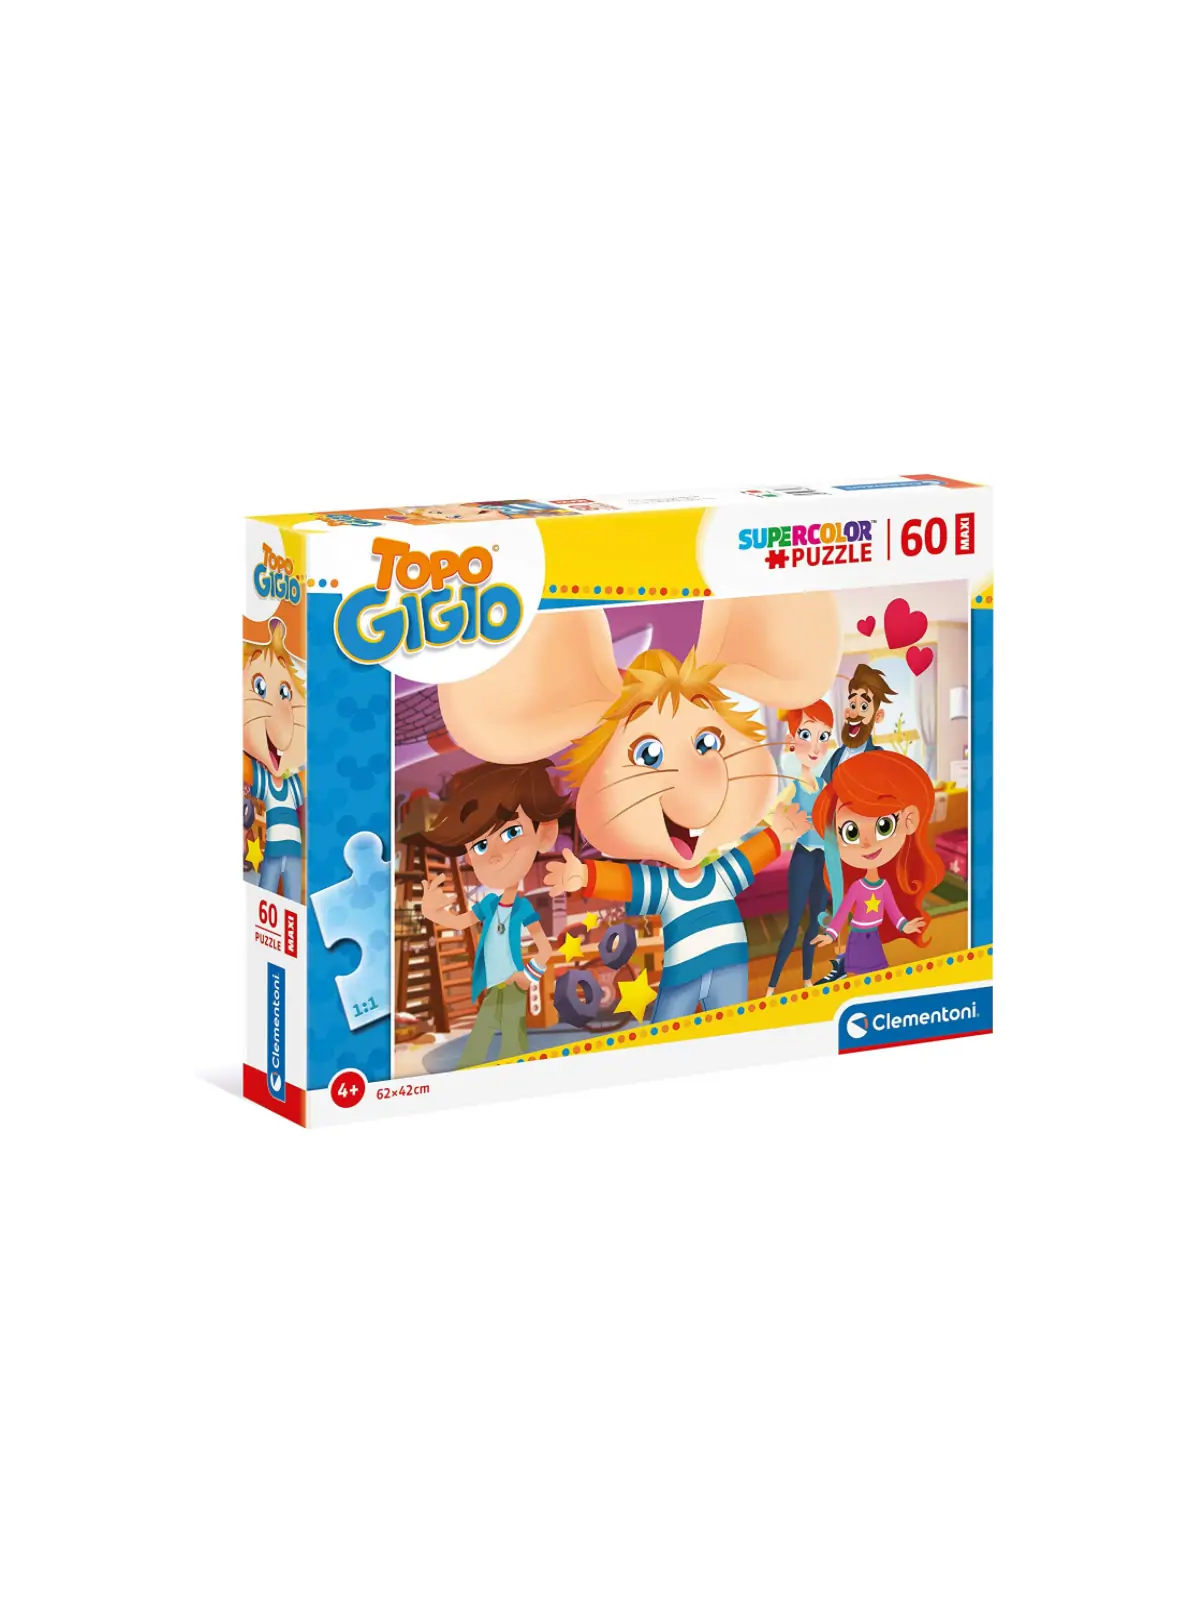 Super Color Puzzle Topo Gigio 60 pcs